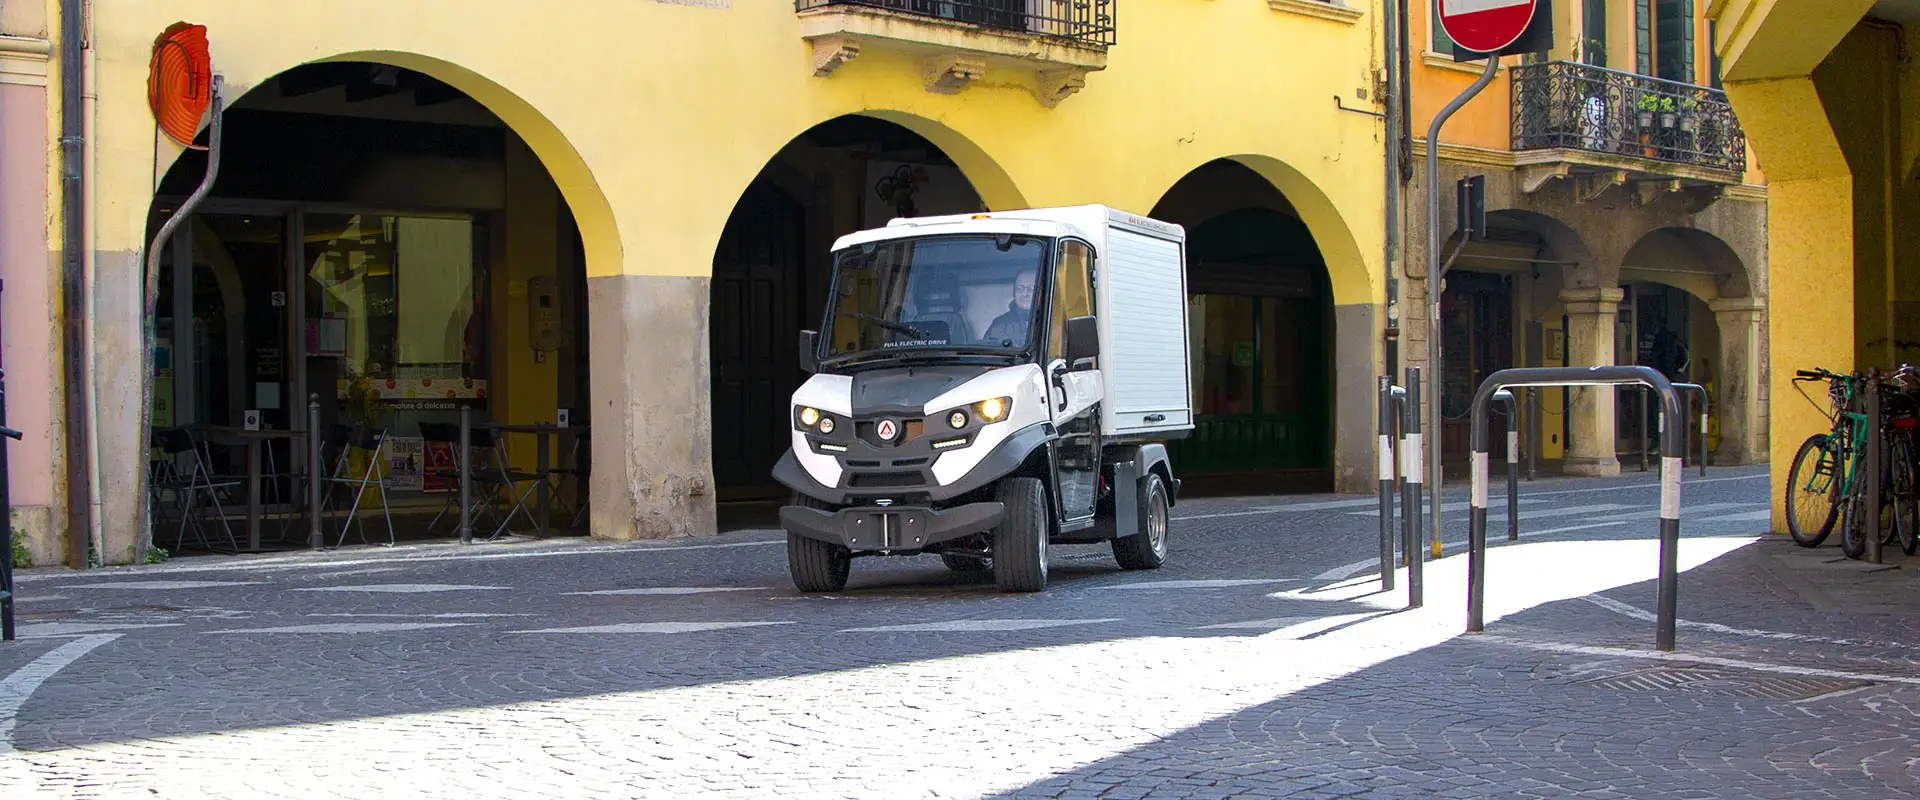 Veículos elétricos de Transporte Logística Alke' - Distribuição de mercadorias e materiais de zero emissões